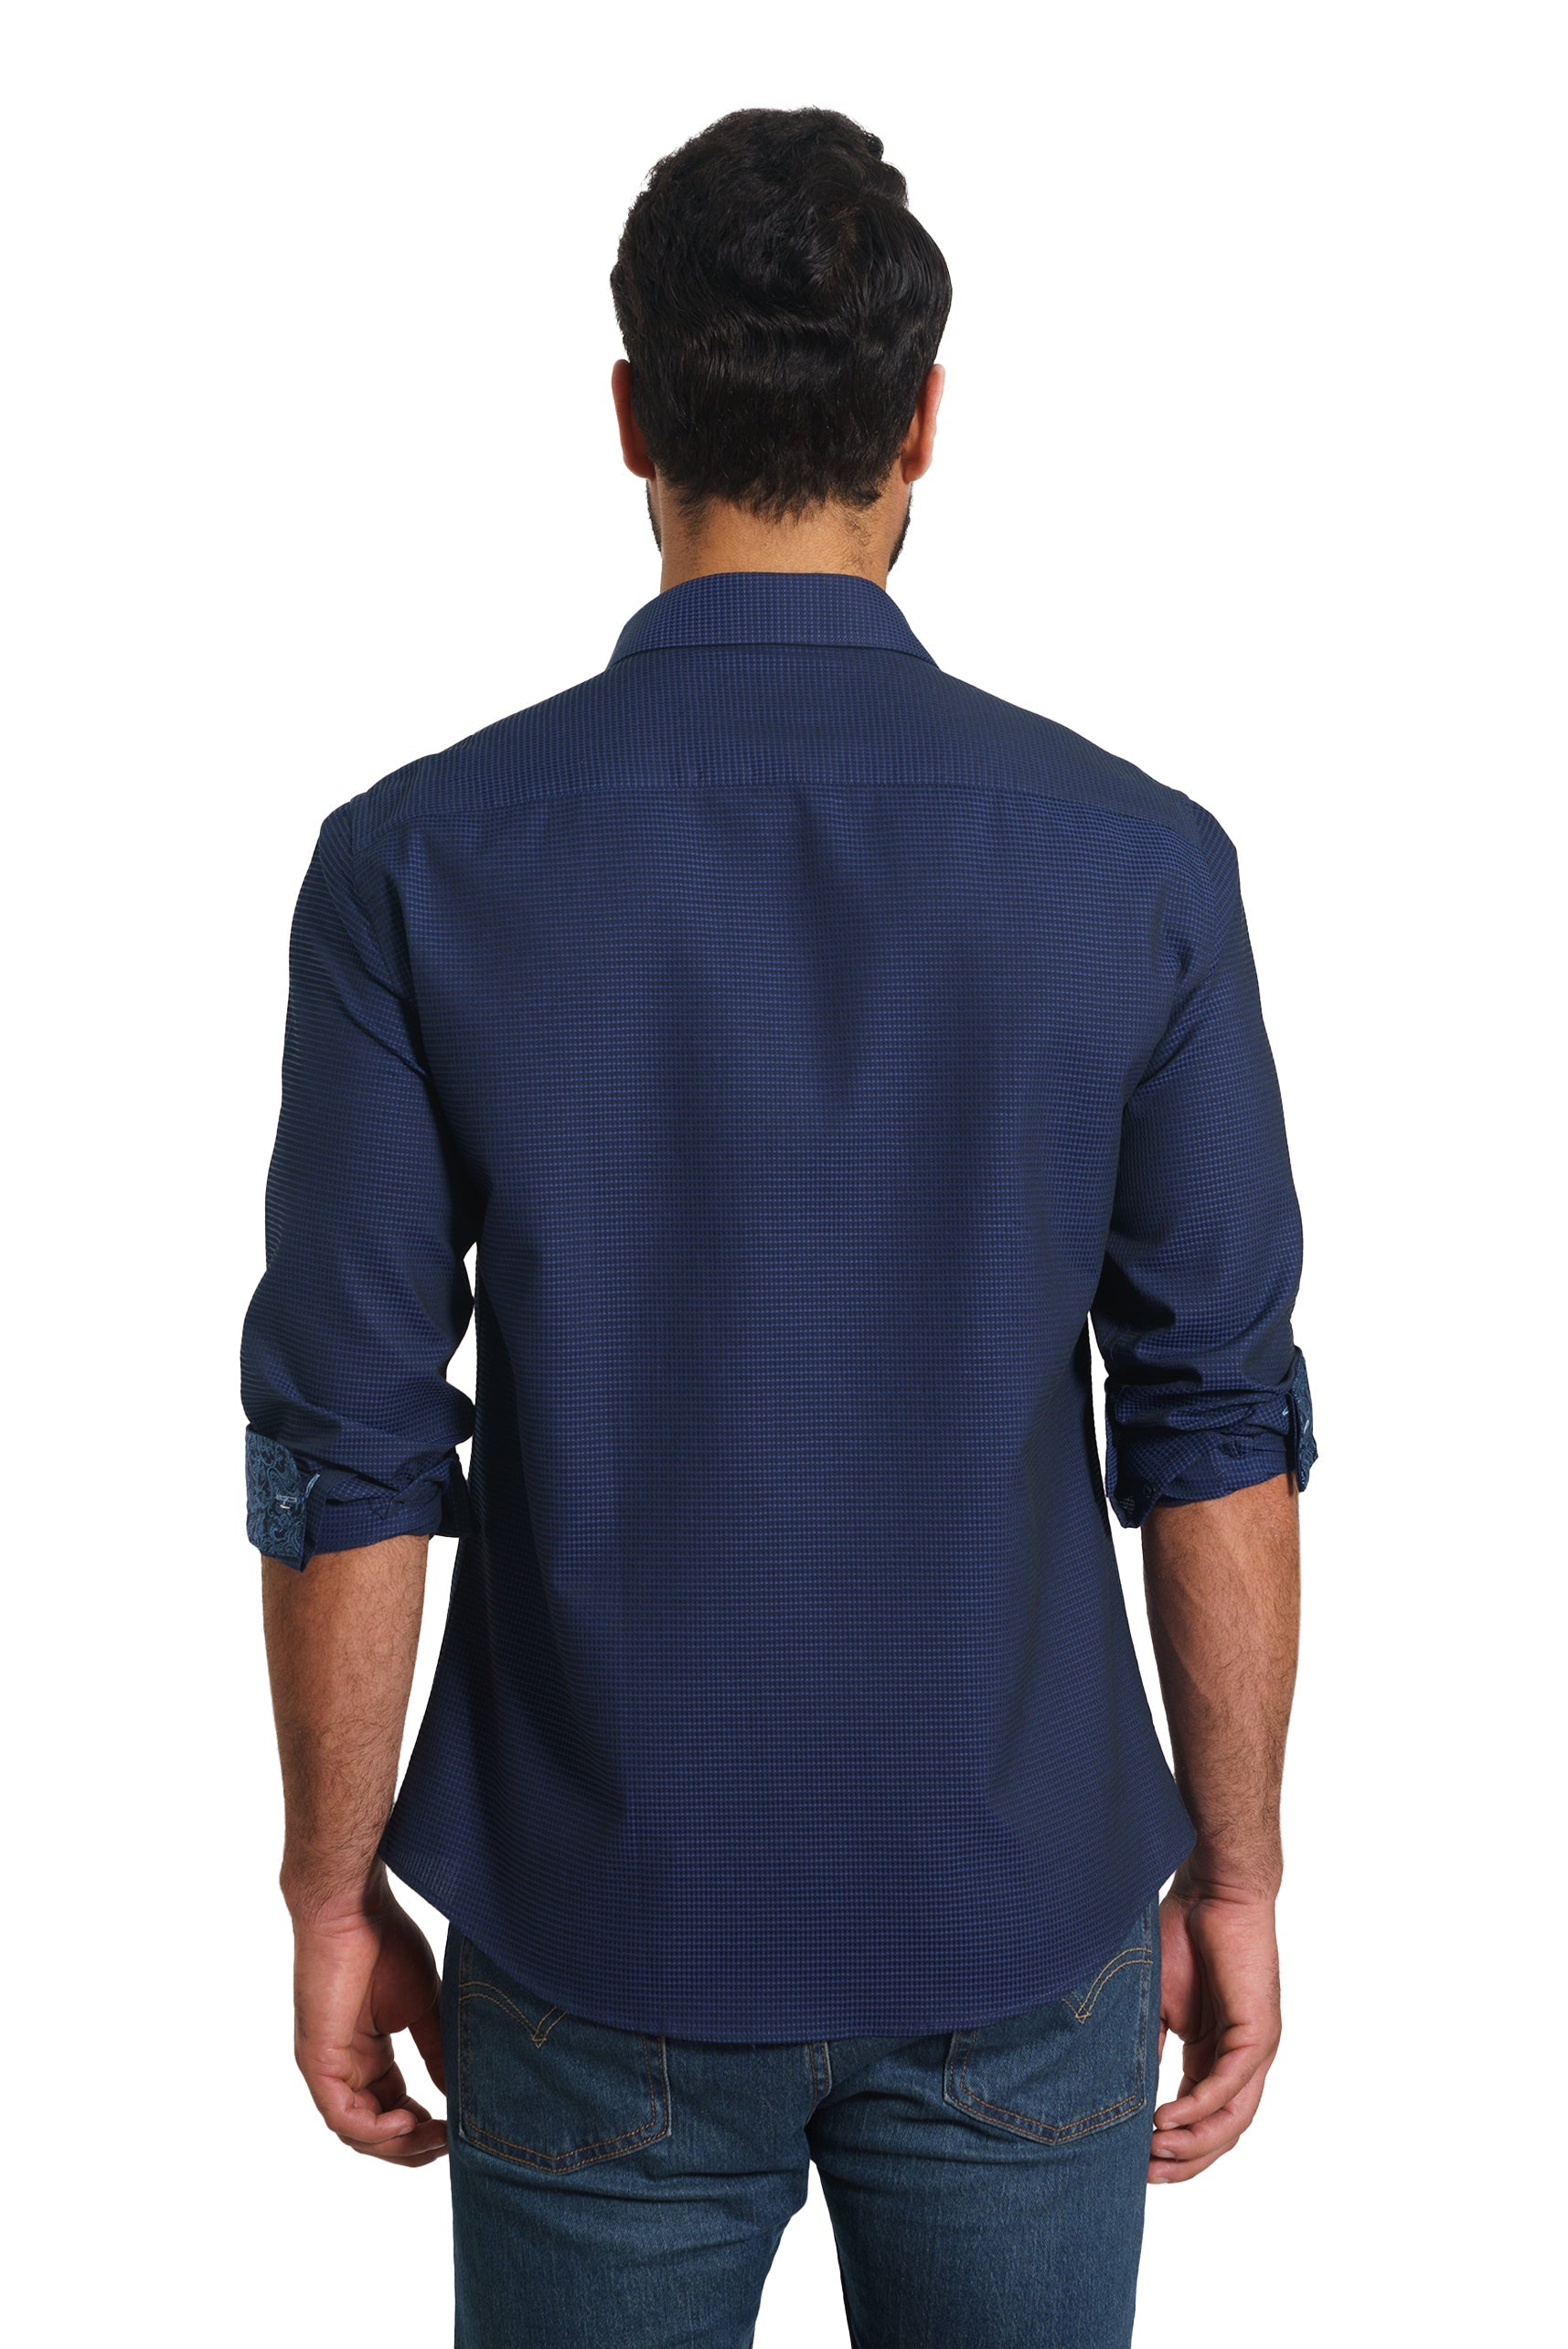 Navy Long Sleeve Shirt TH-2876 Back